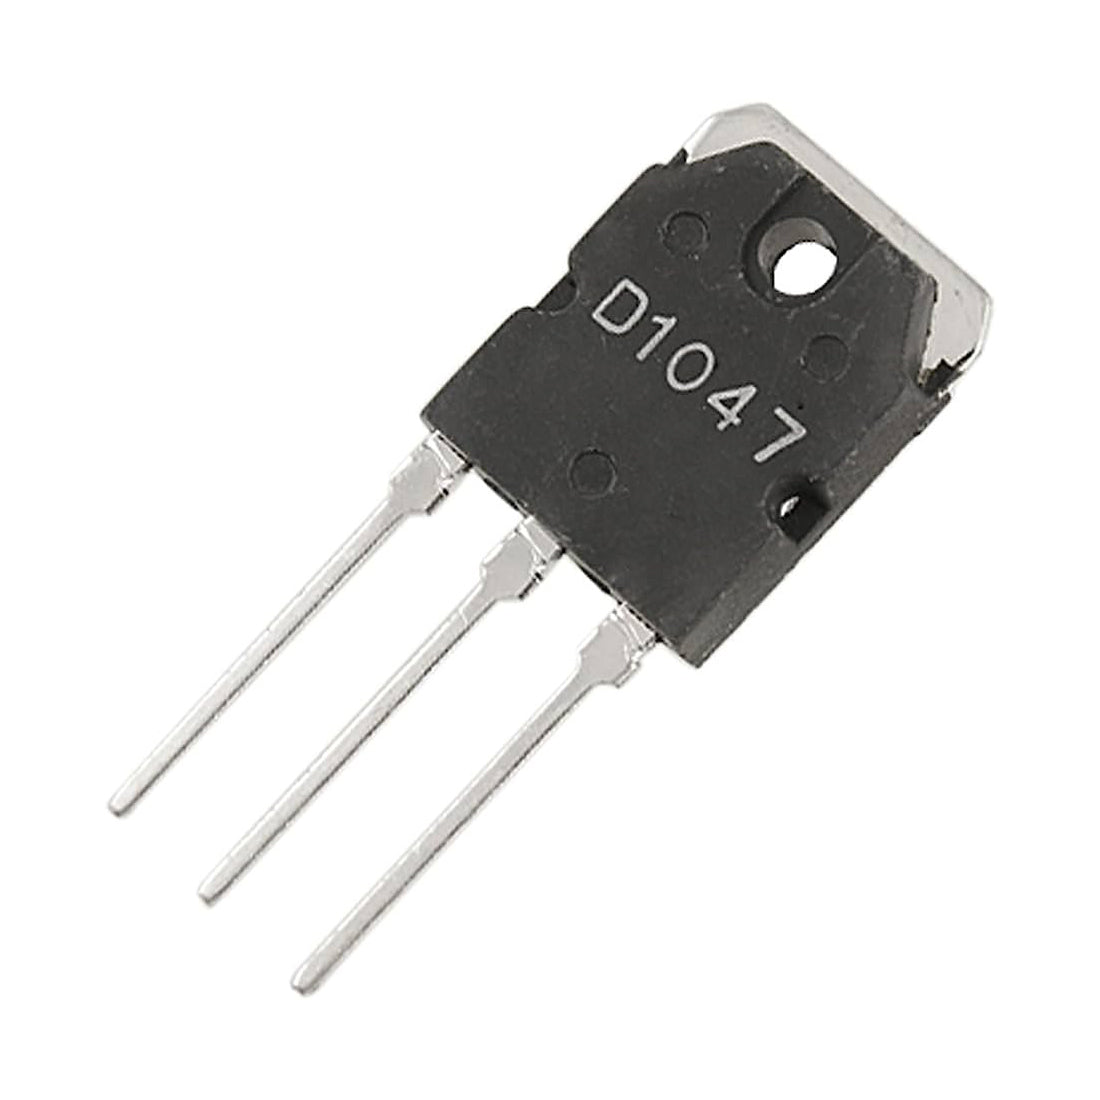 2SD1047 Componente elettronico, circuito integrato, transistor, 3 contatti